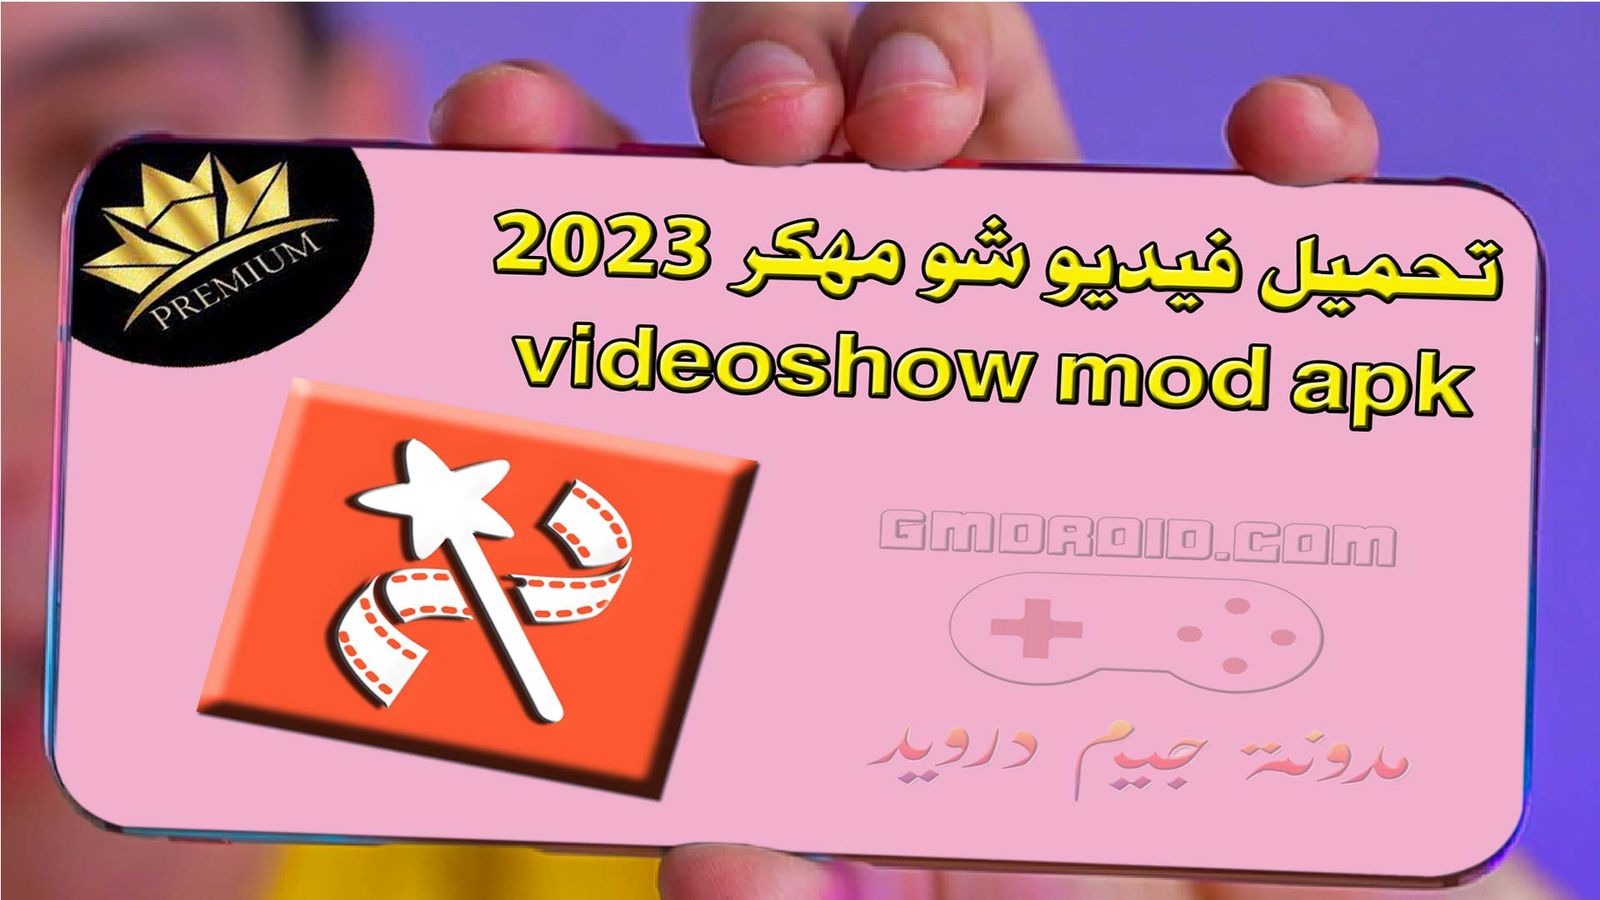 تحميل فيديو شو مهكر 2023 - videoshow mod apk .